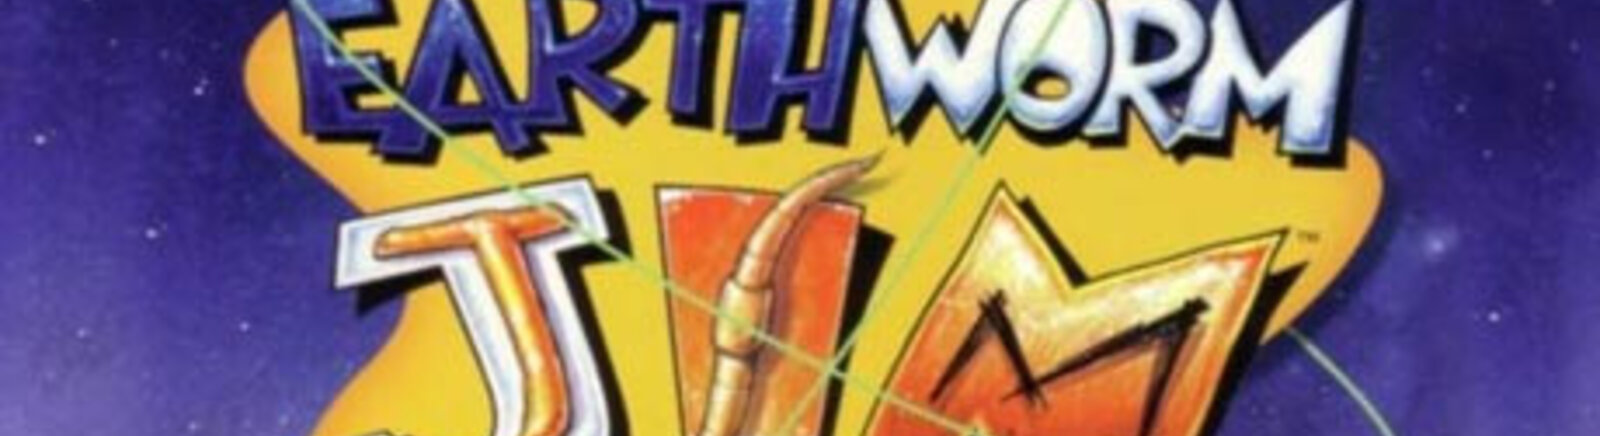 Дата выхода Earthworm Jim: Special Edition (Earthworm Jim)  на PC, Nintendo DSi и iPhone в России и во всем мире